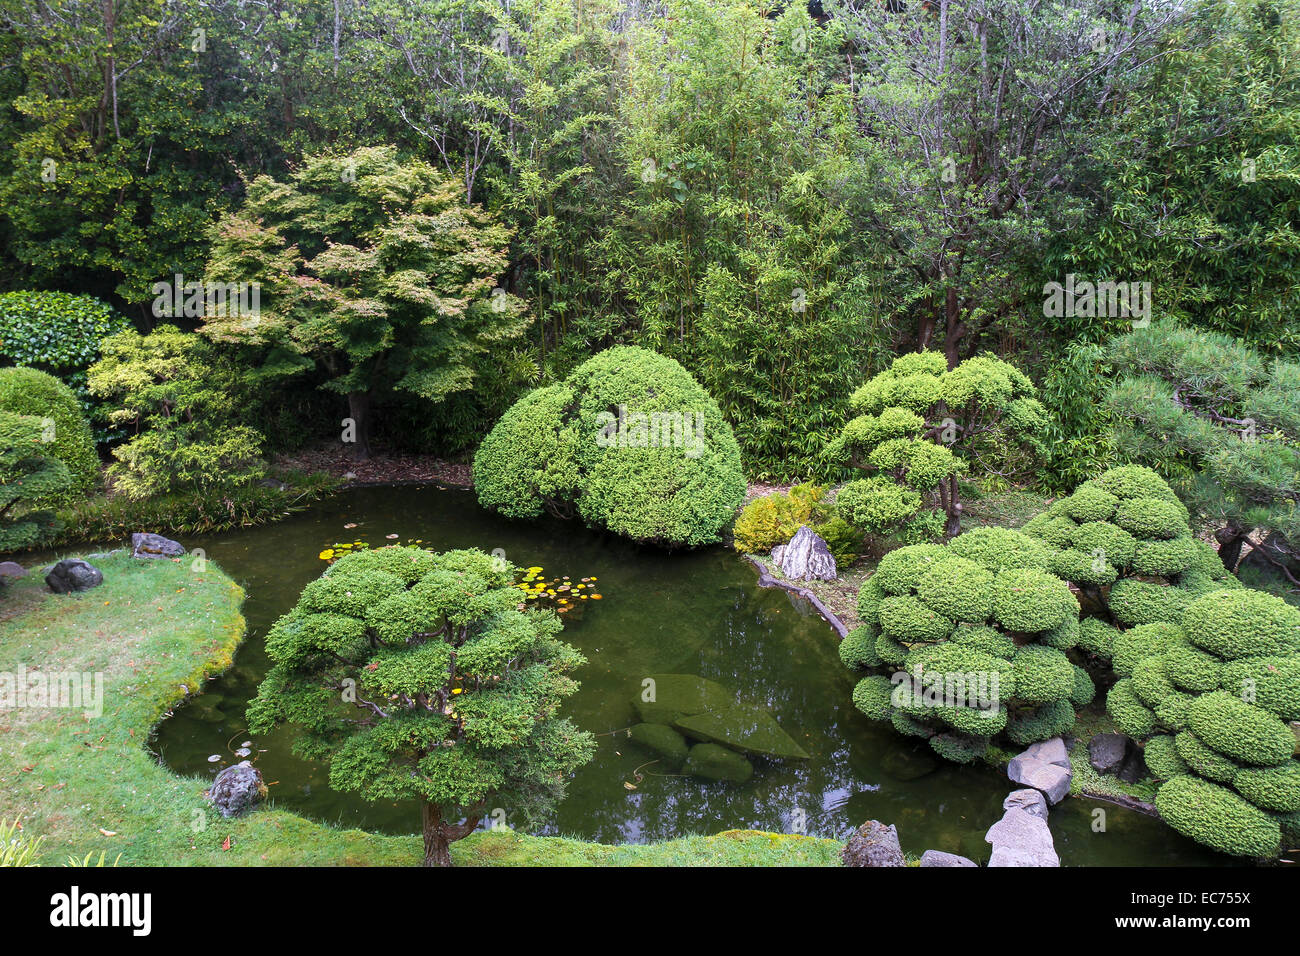 Japanese Tea Garden, le Golden Gate Park, San Francisco, Californie Banque D'Images